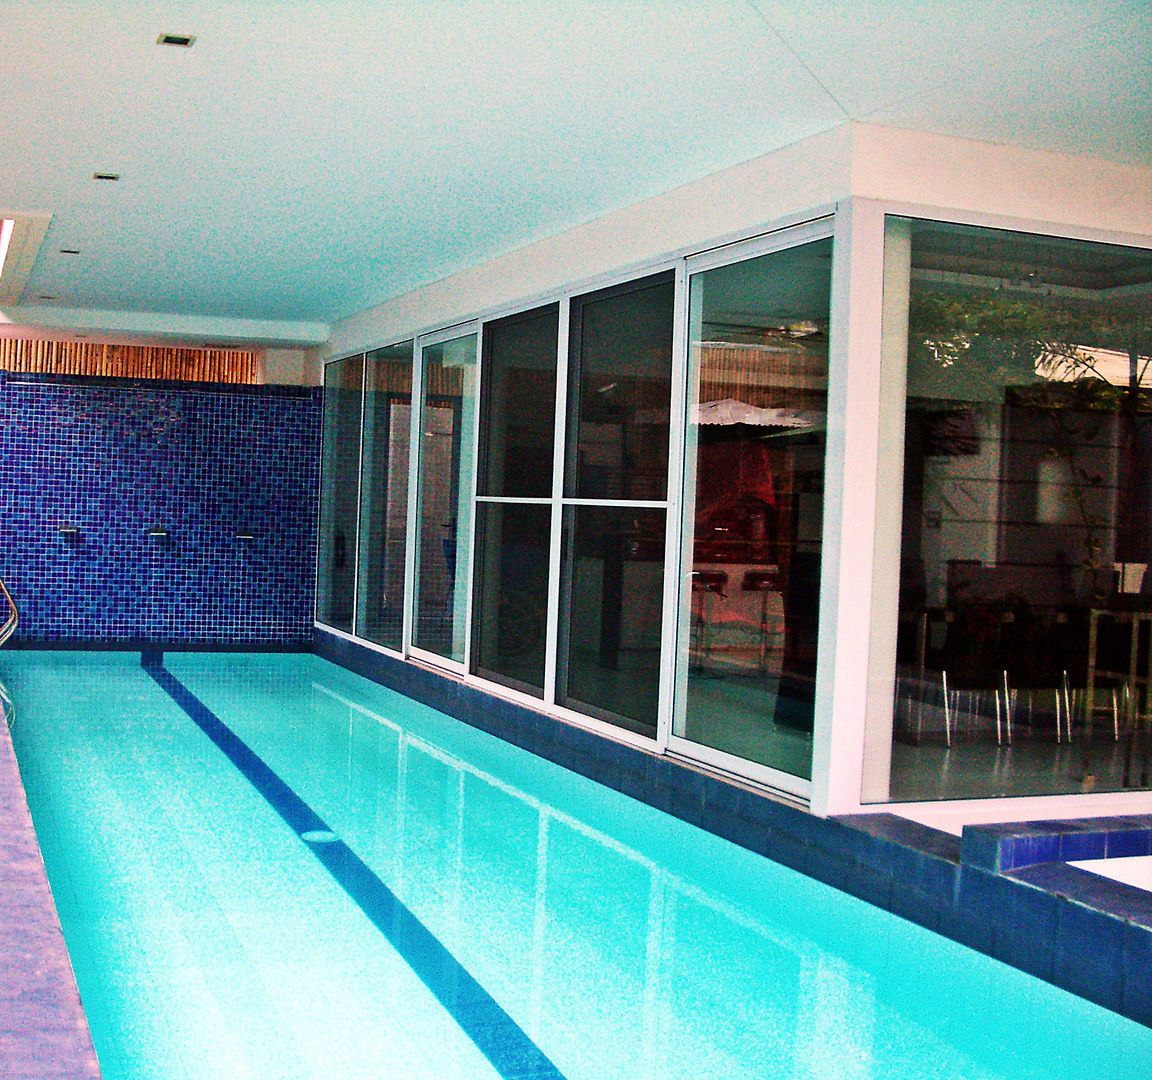 Bel Air Residence, Architect Manila Architect Manila Hồ bơi phong cách hiện đại